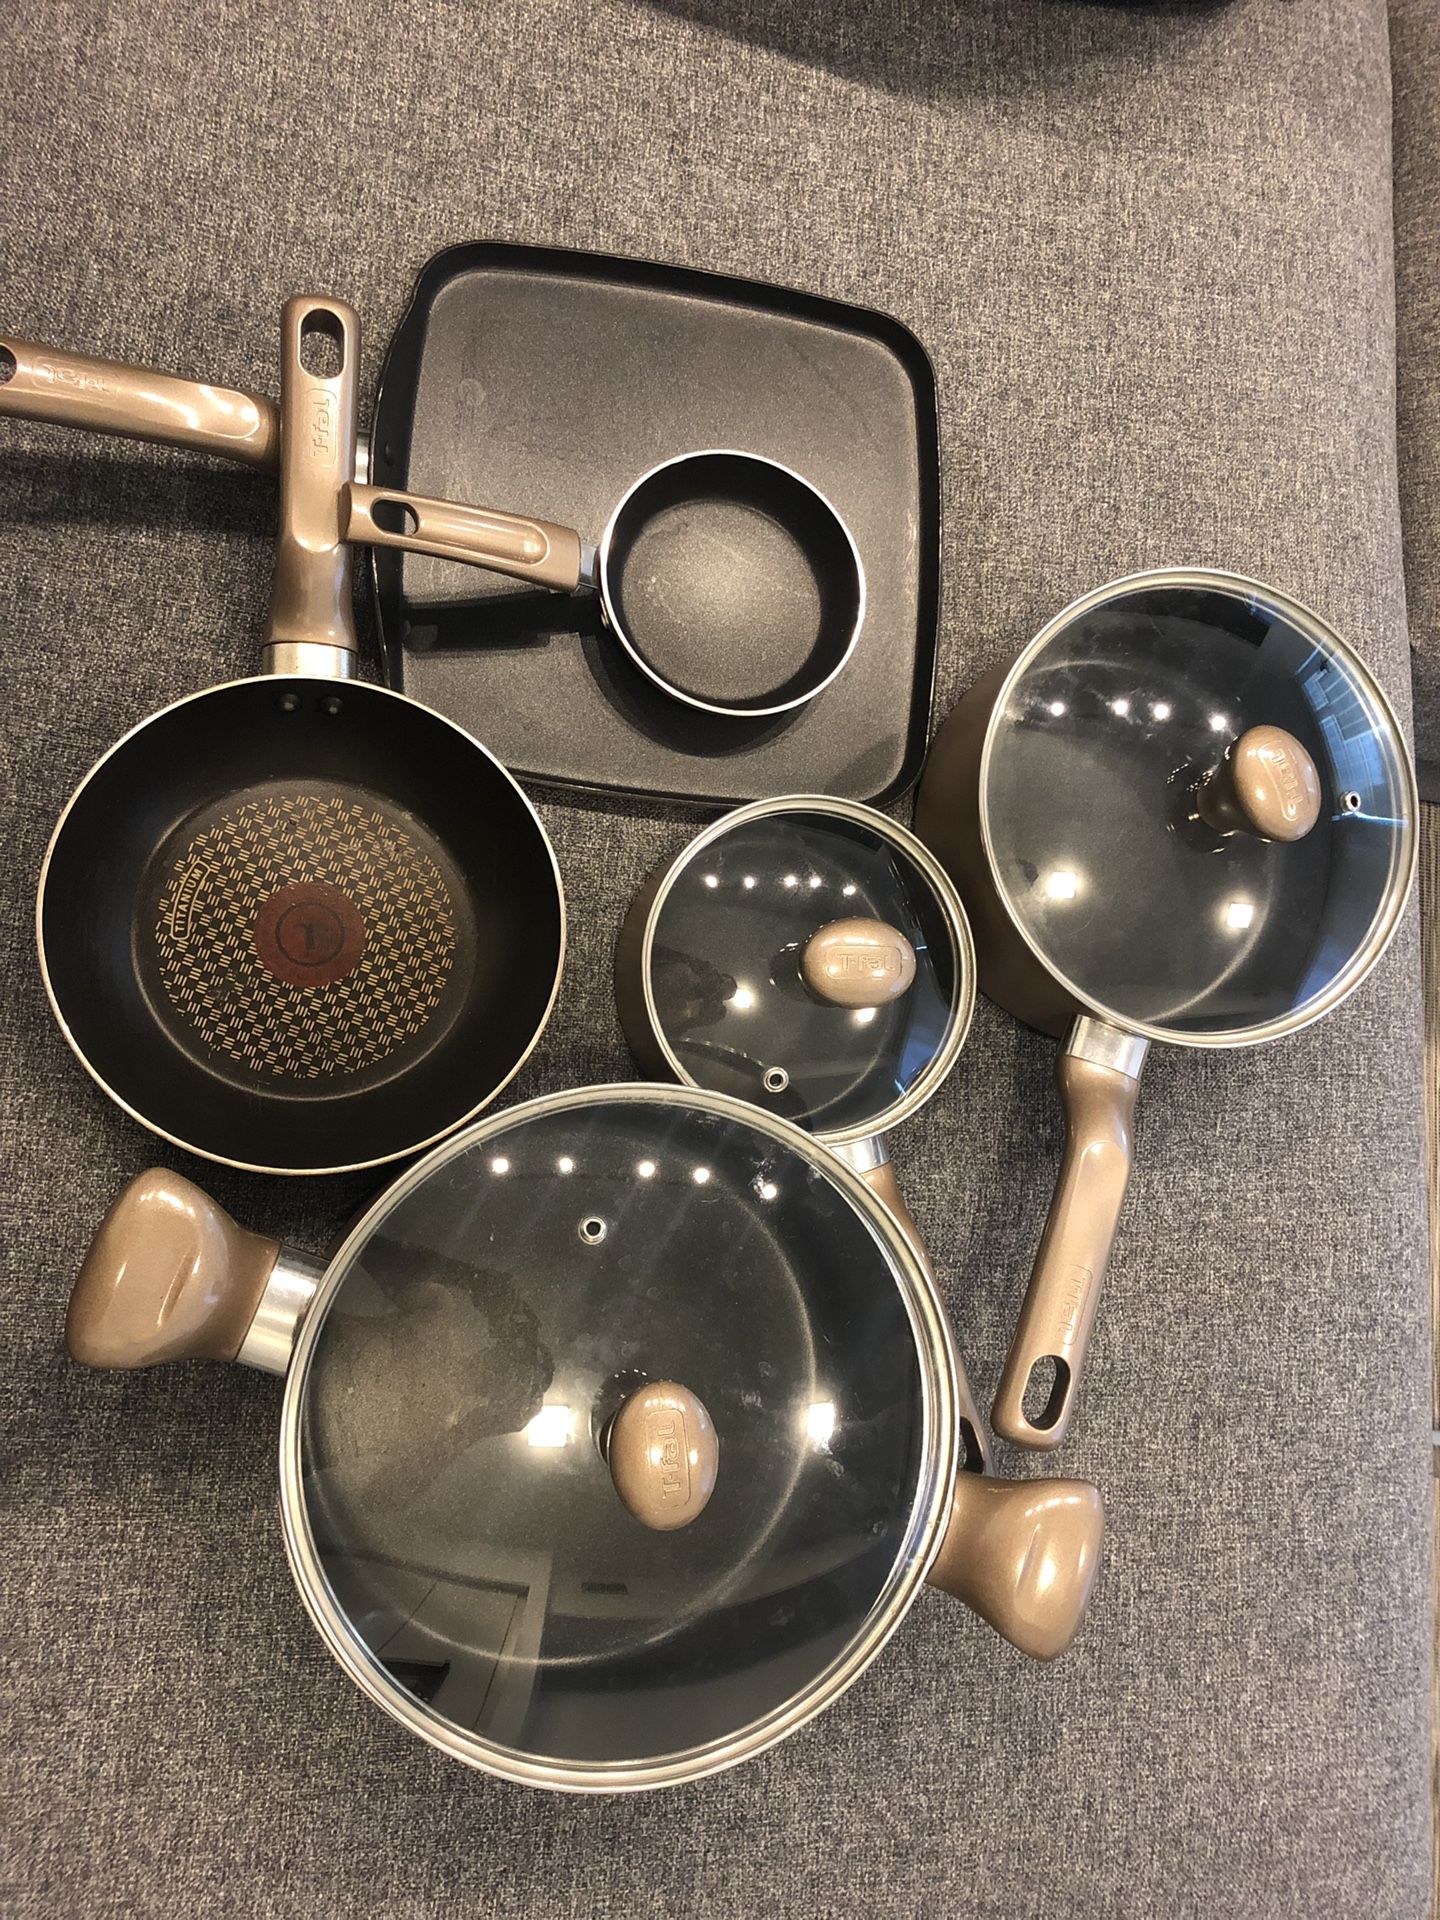 Tefal pots and pans set